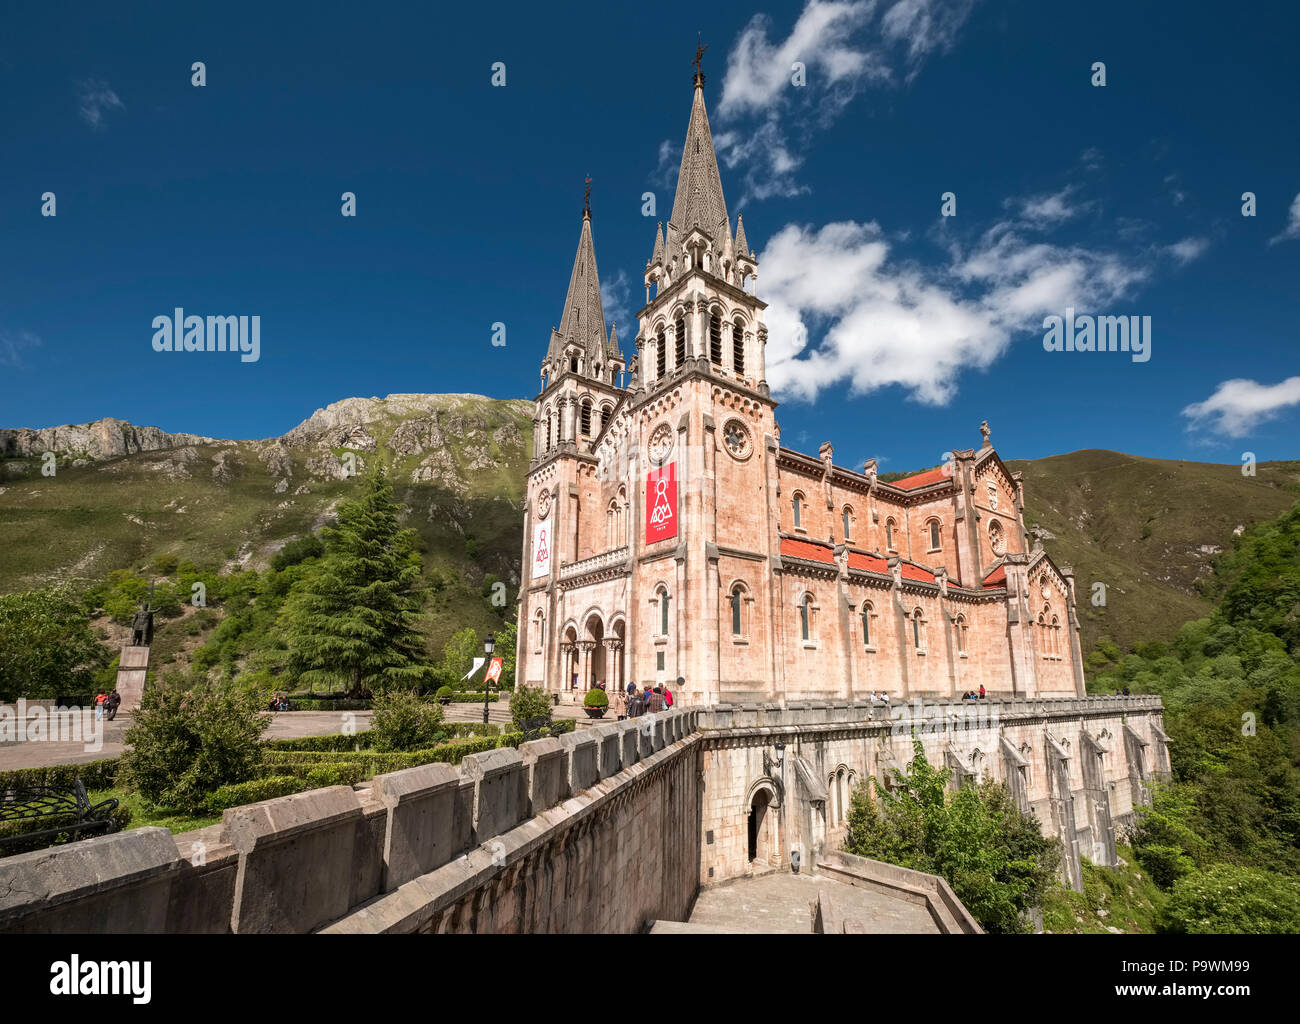 Basilica of Covadonga, Santa Maria la Real Basilica, Picos de Europa National Park, Covadonga, Cangas de Onís, Asturias, Spain Stock Photo